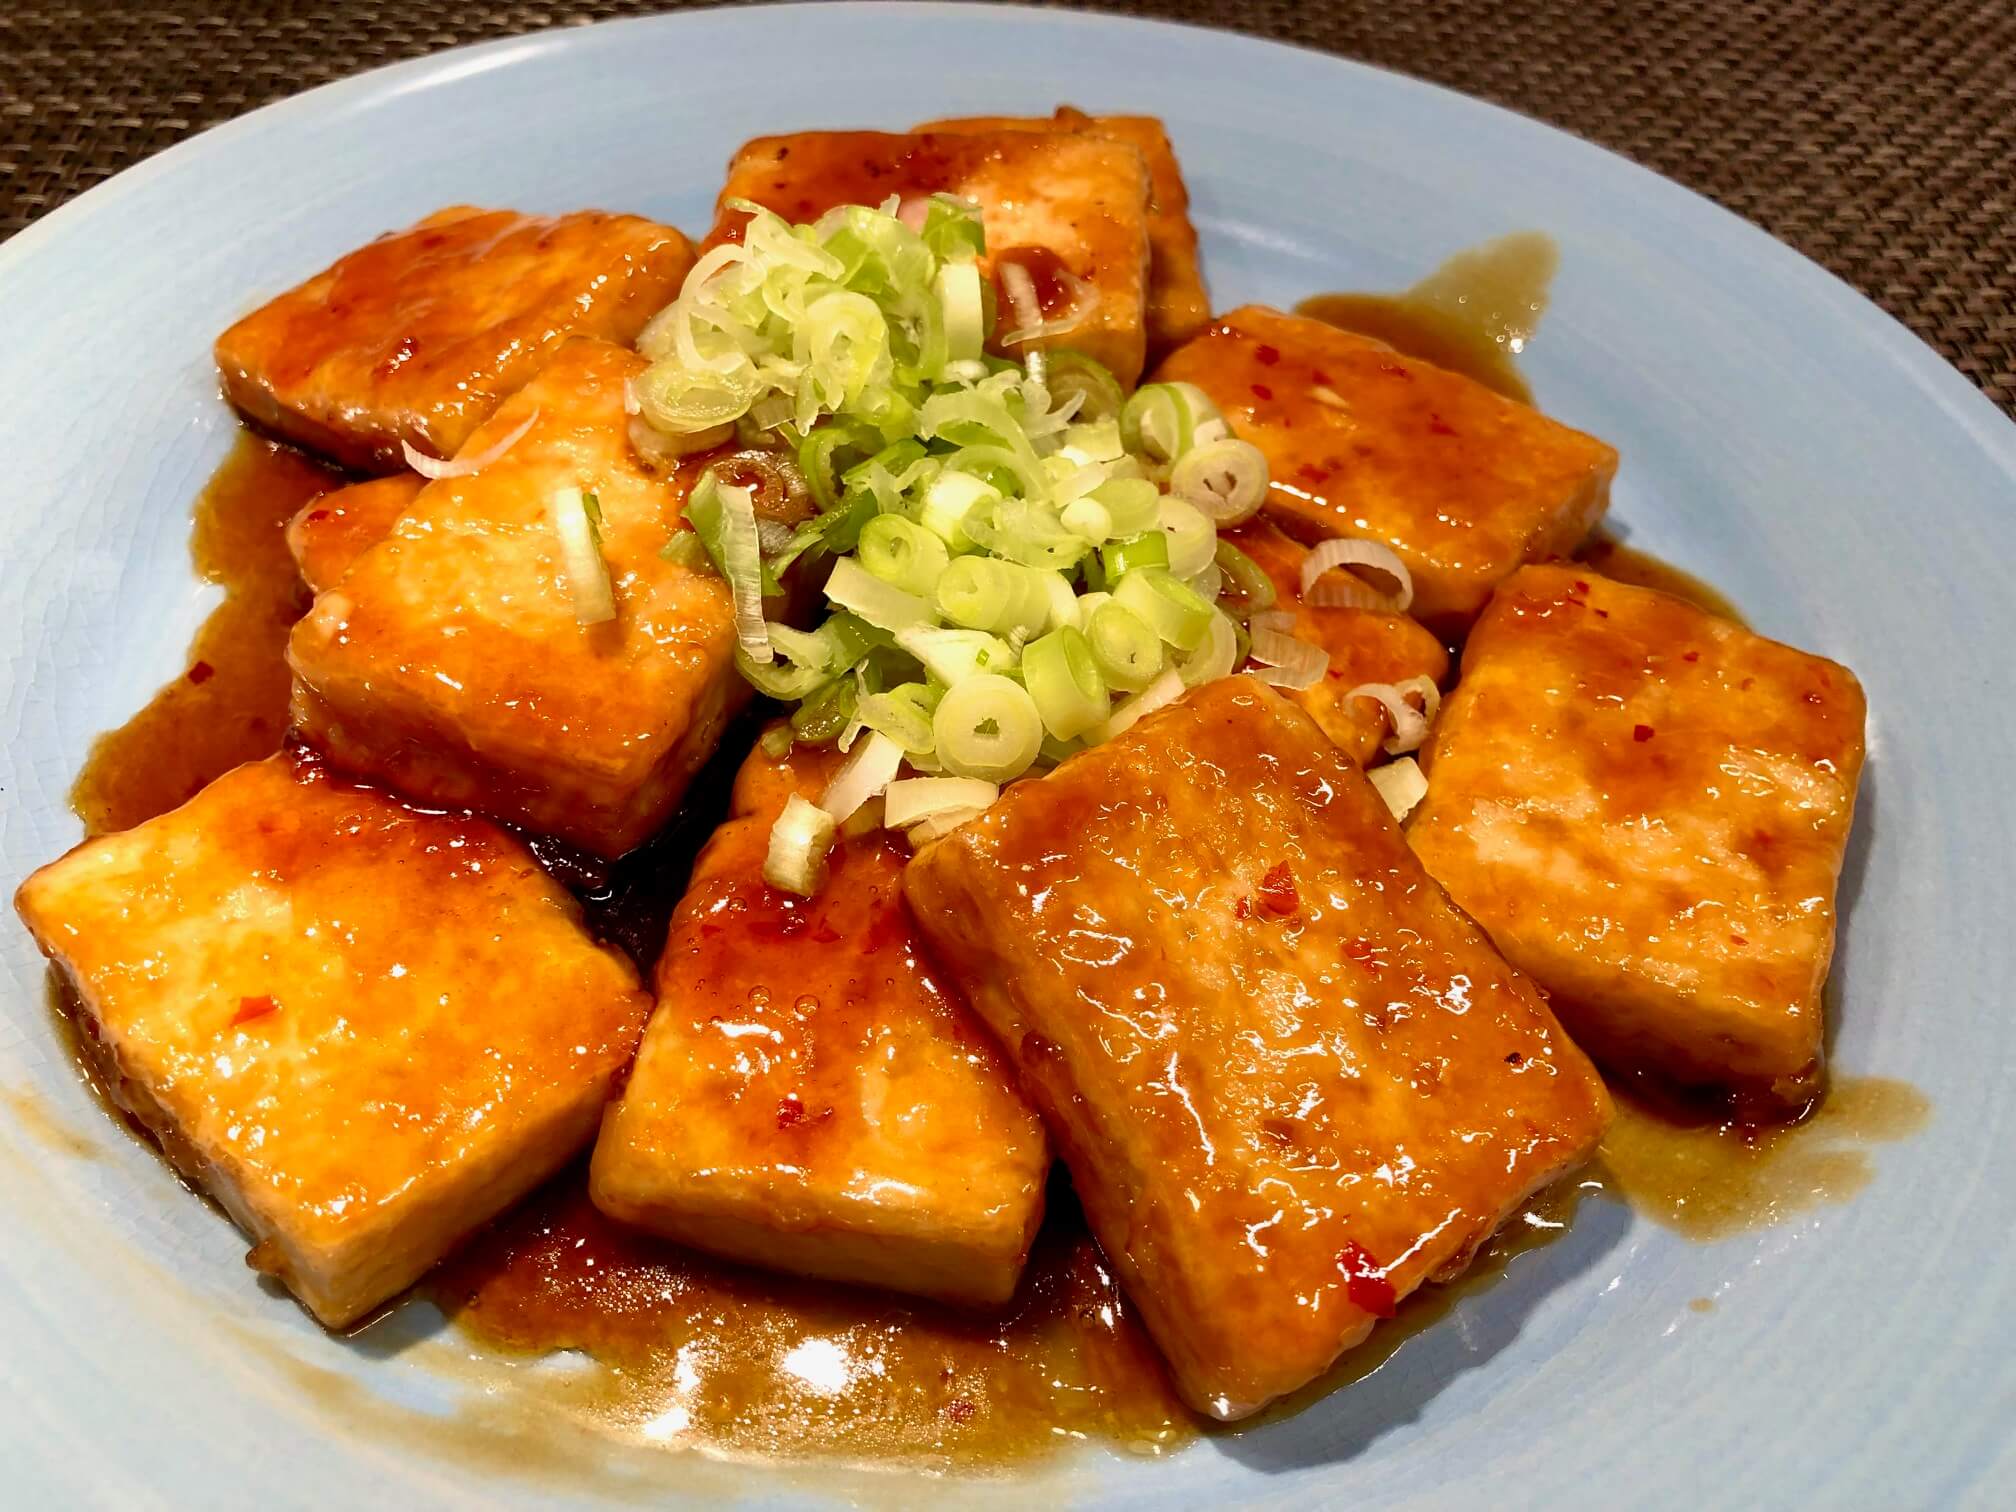 Japanese tofu steak